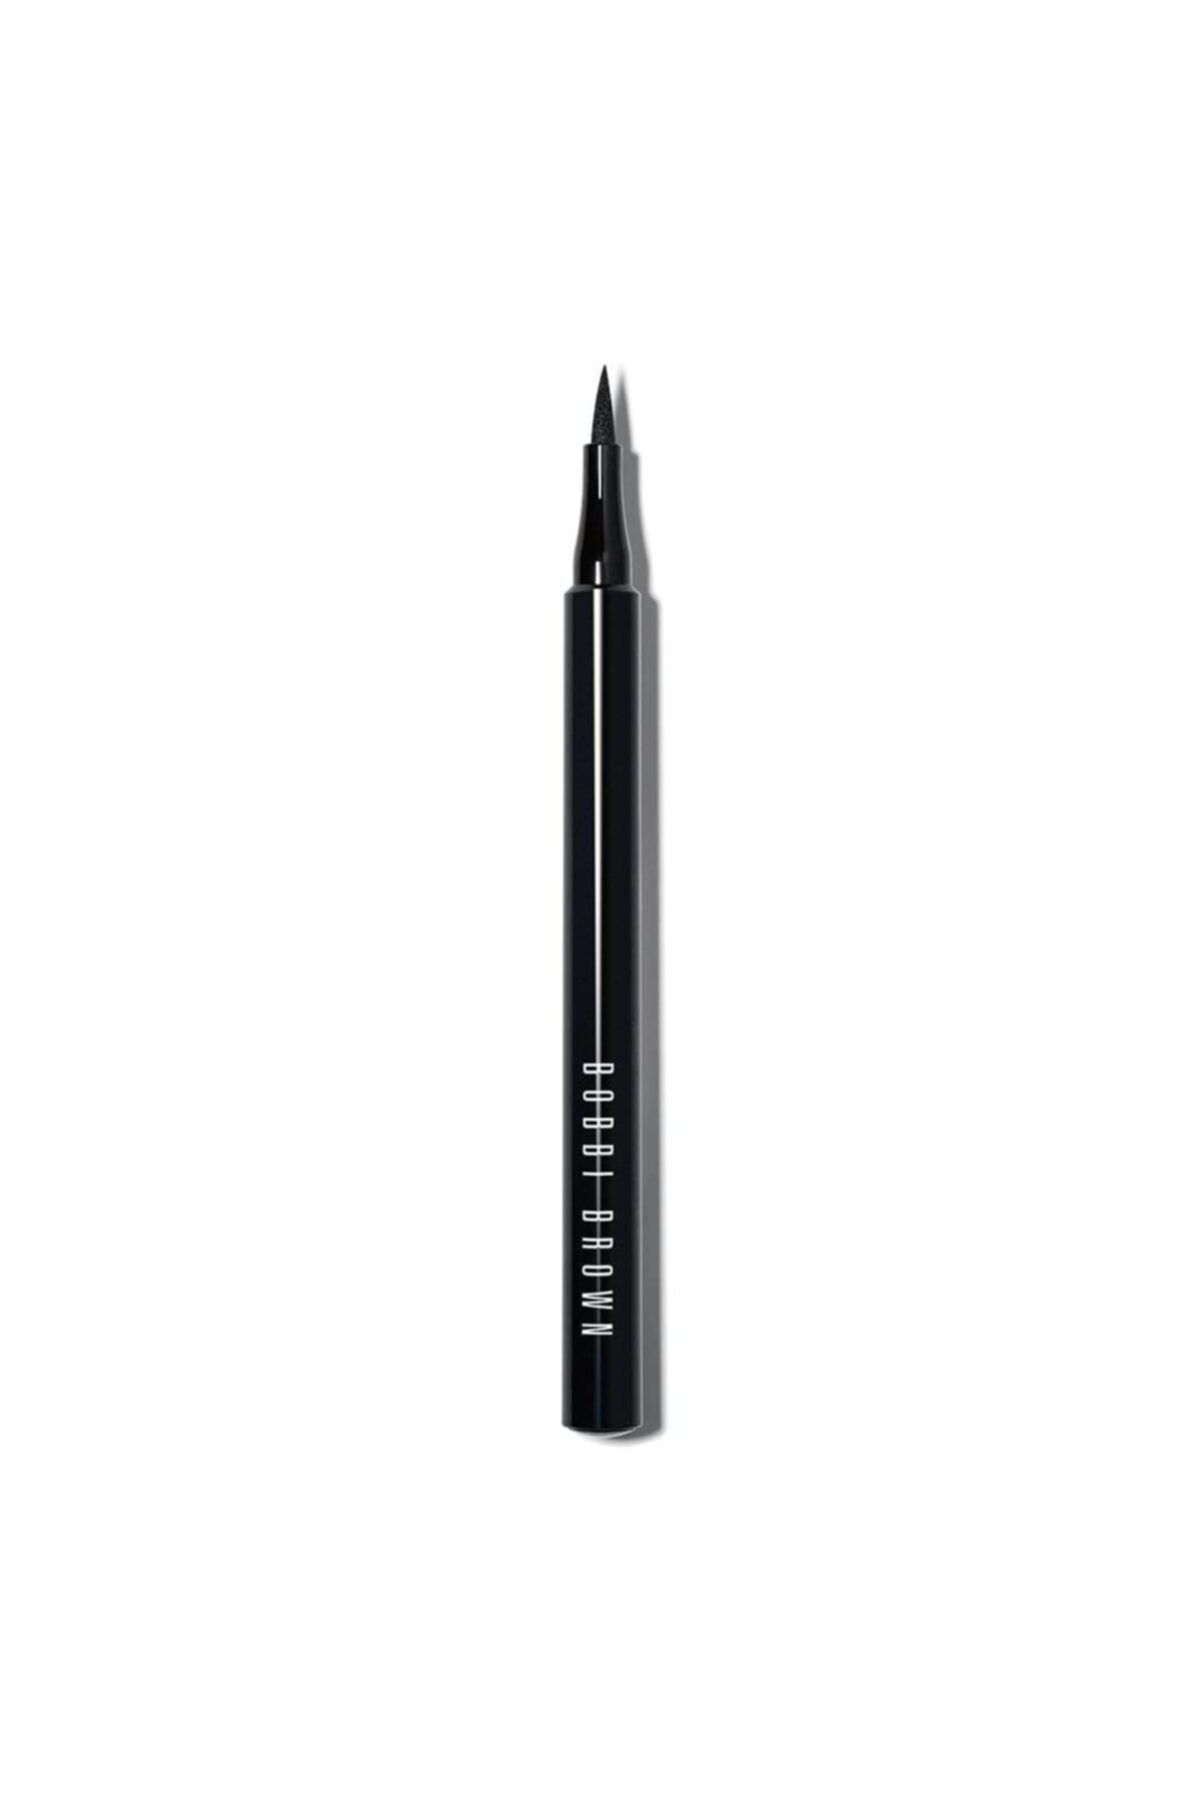 Bobbi Brown Ink Liner / Eyeliner Fh13 .05 ml Blackest Black 716170118574